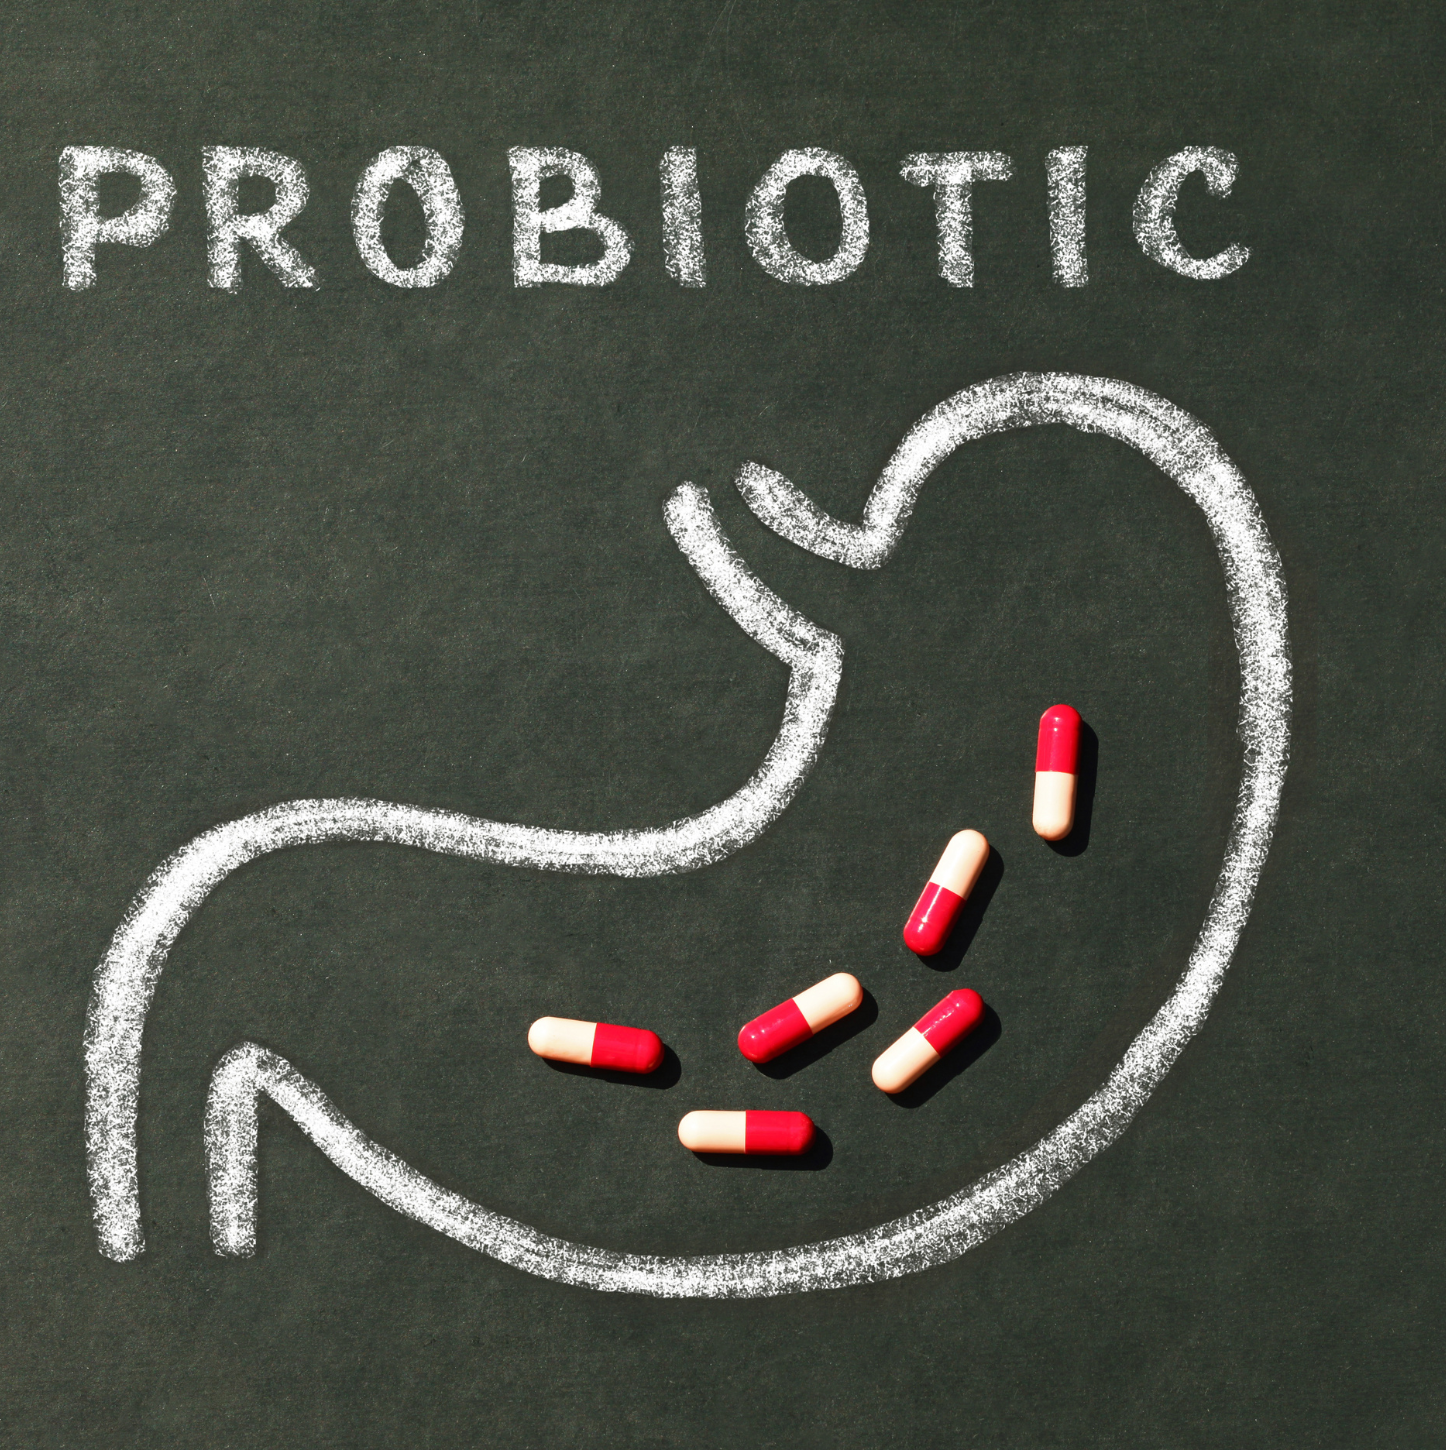 Can Probiotics Make Me Sick?